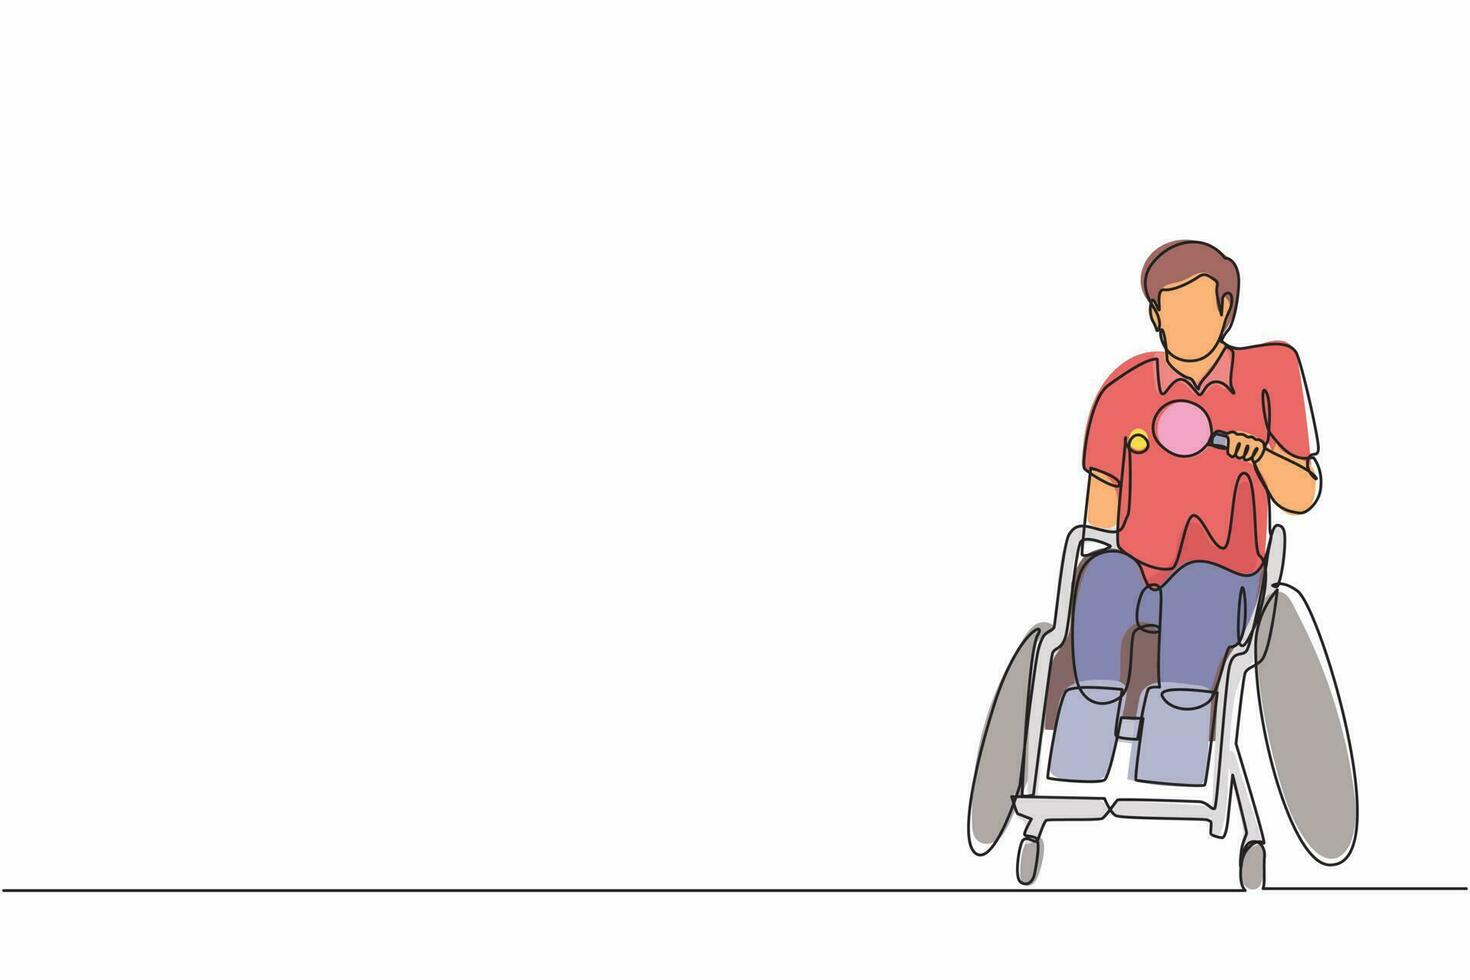 dessin en ligne continue simple sportif handicapé en fauteuil roulant jouant au tennis de table. championnat des jeux pour handicapés. passe-temps, intérêts des personnes handicapées. une ligne dessiner vecteur de conception graphique